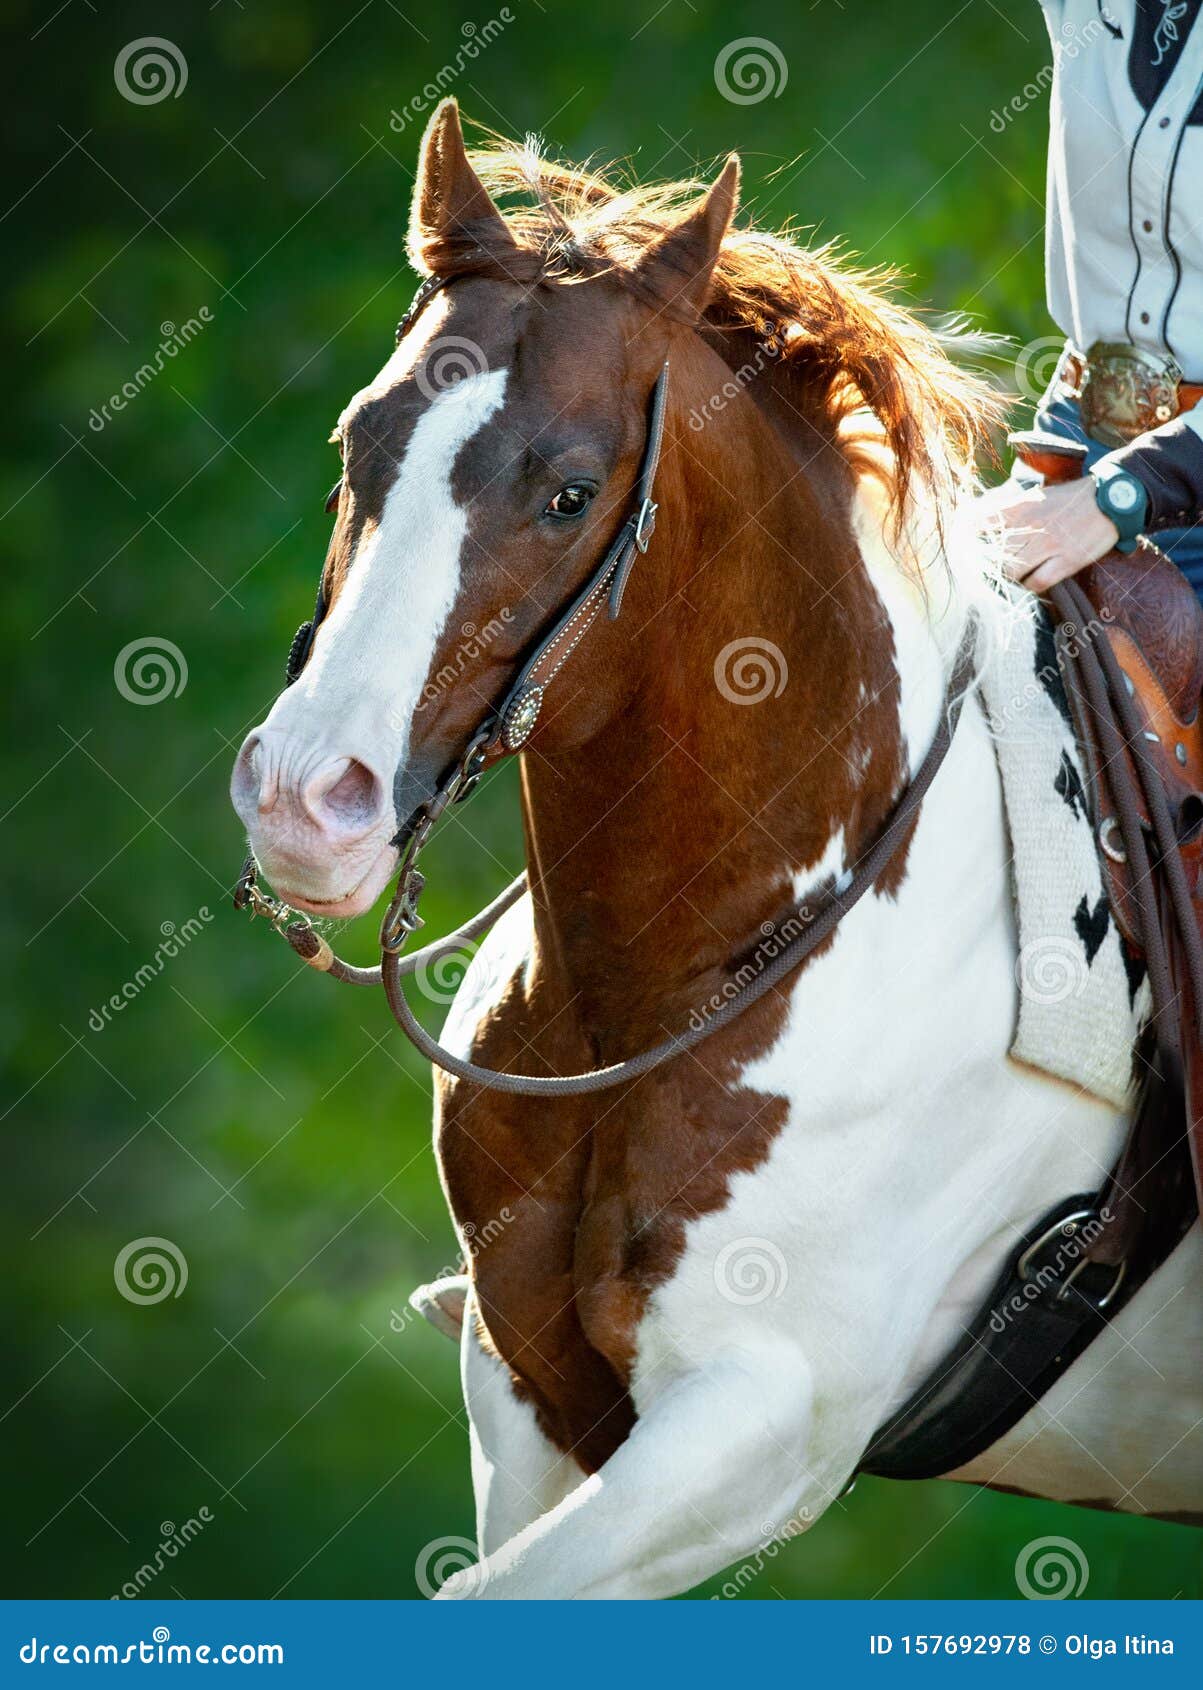 绿色夏日背景中的美国绘马画像库存照片 图片包括有移动 蹄形 纵向 马背 当地 夏天 骑马